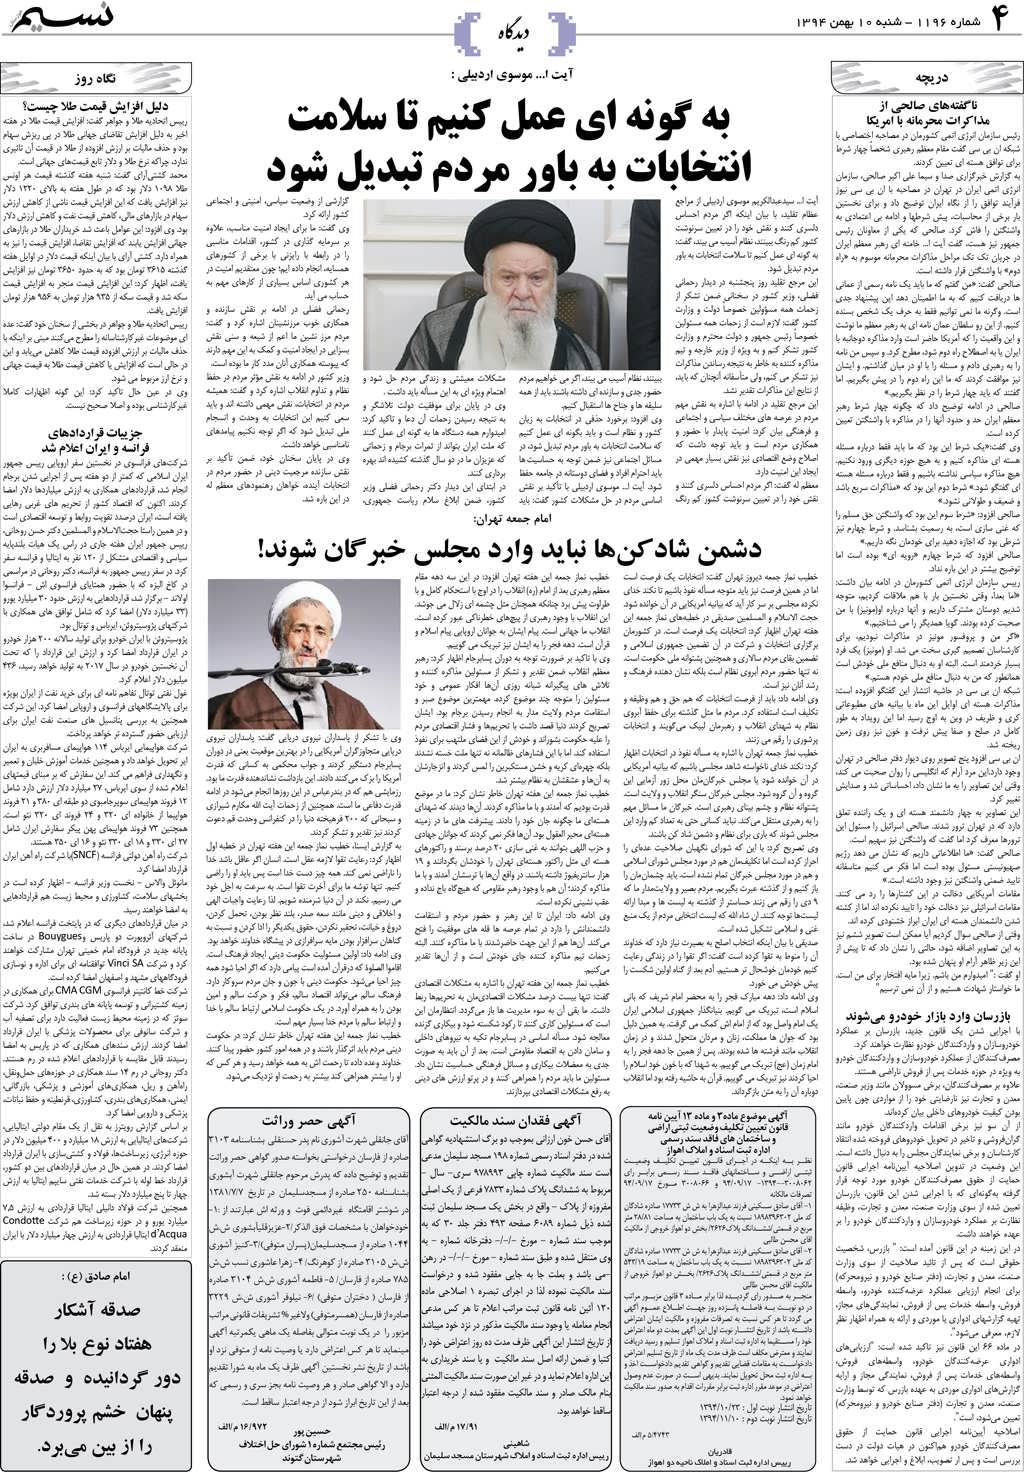 صفحه دیدگاه روزنامه نسیم شماره 1196